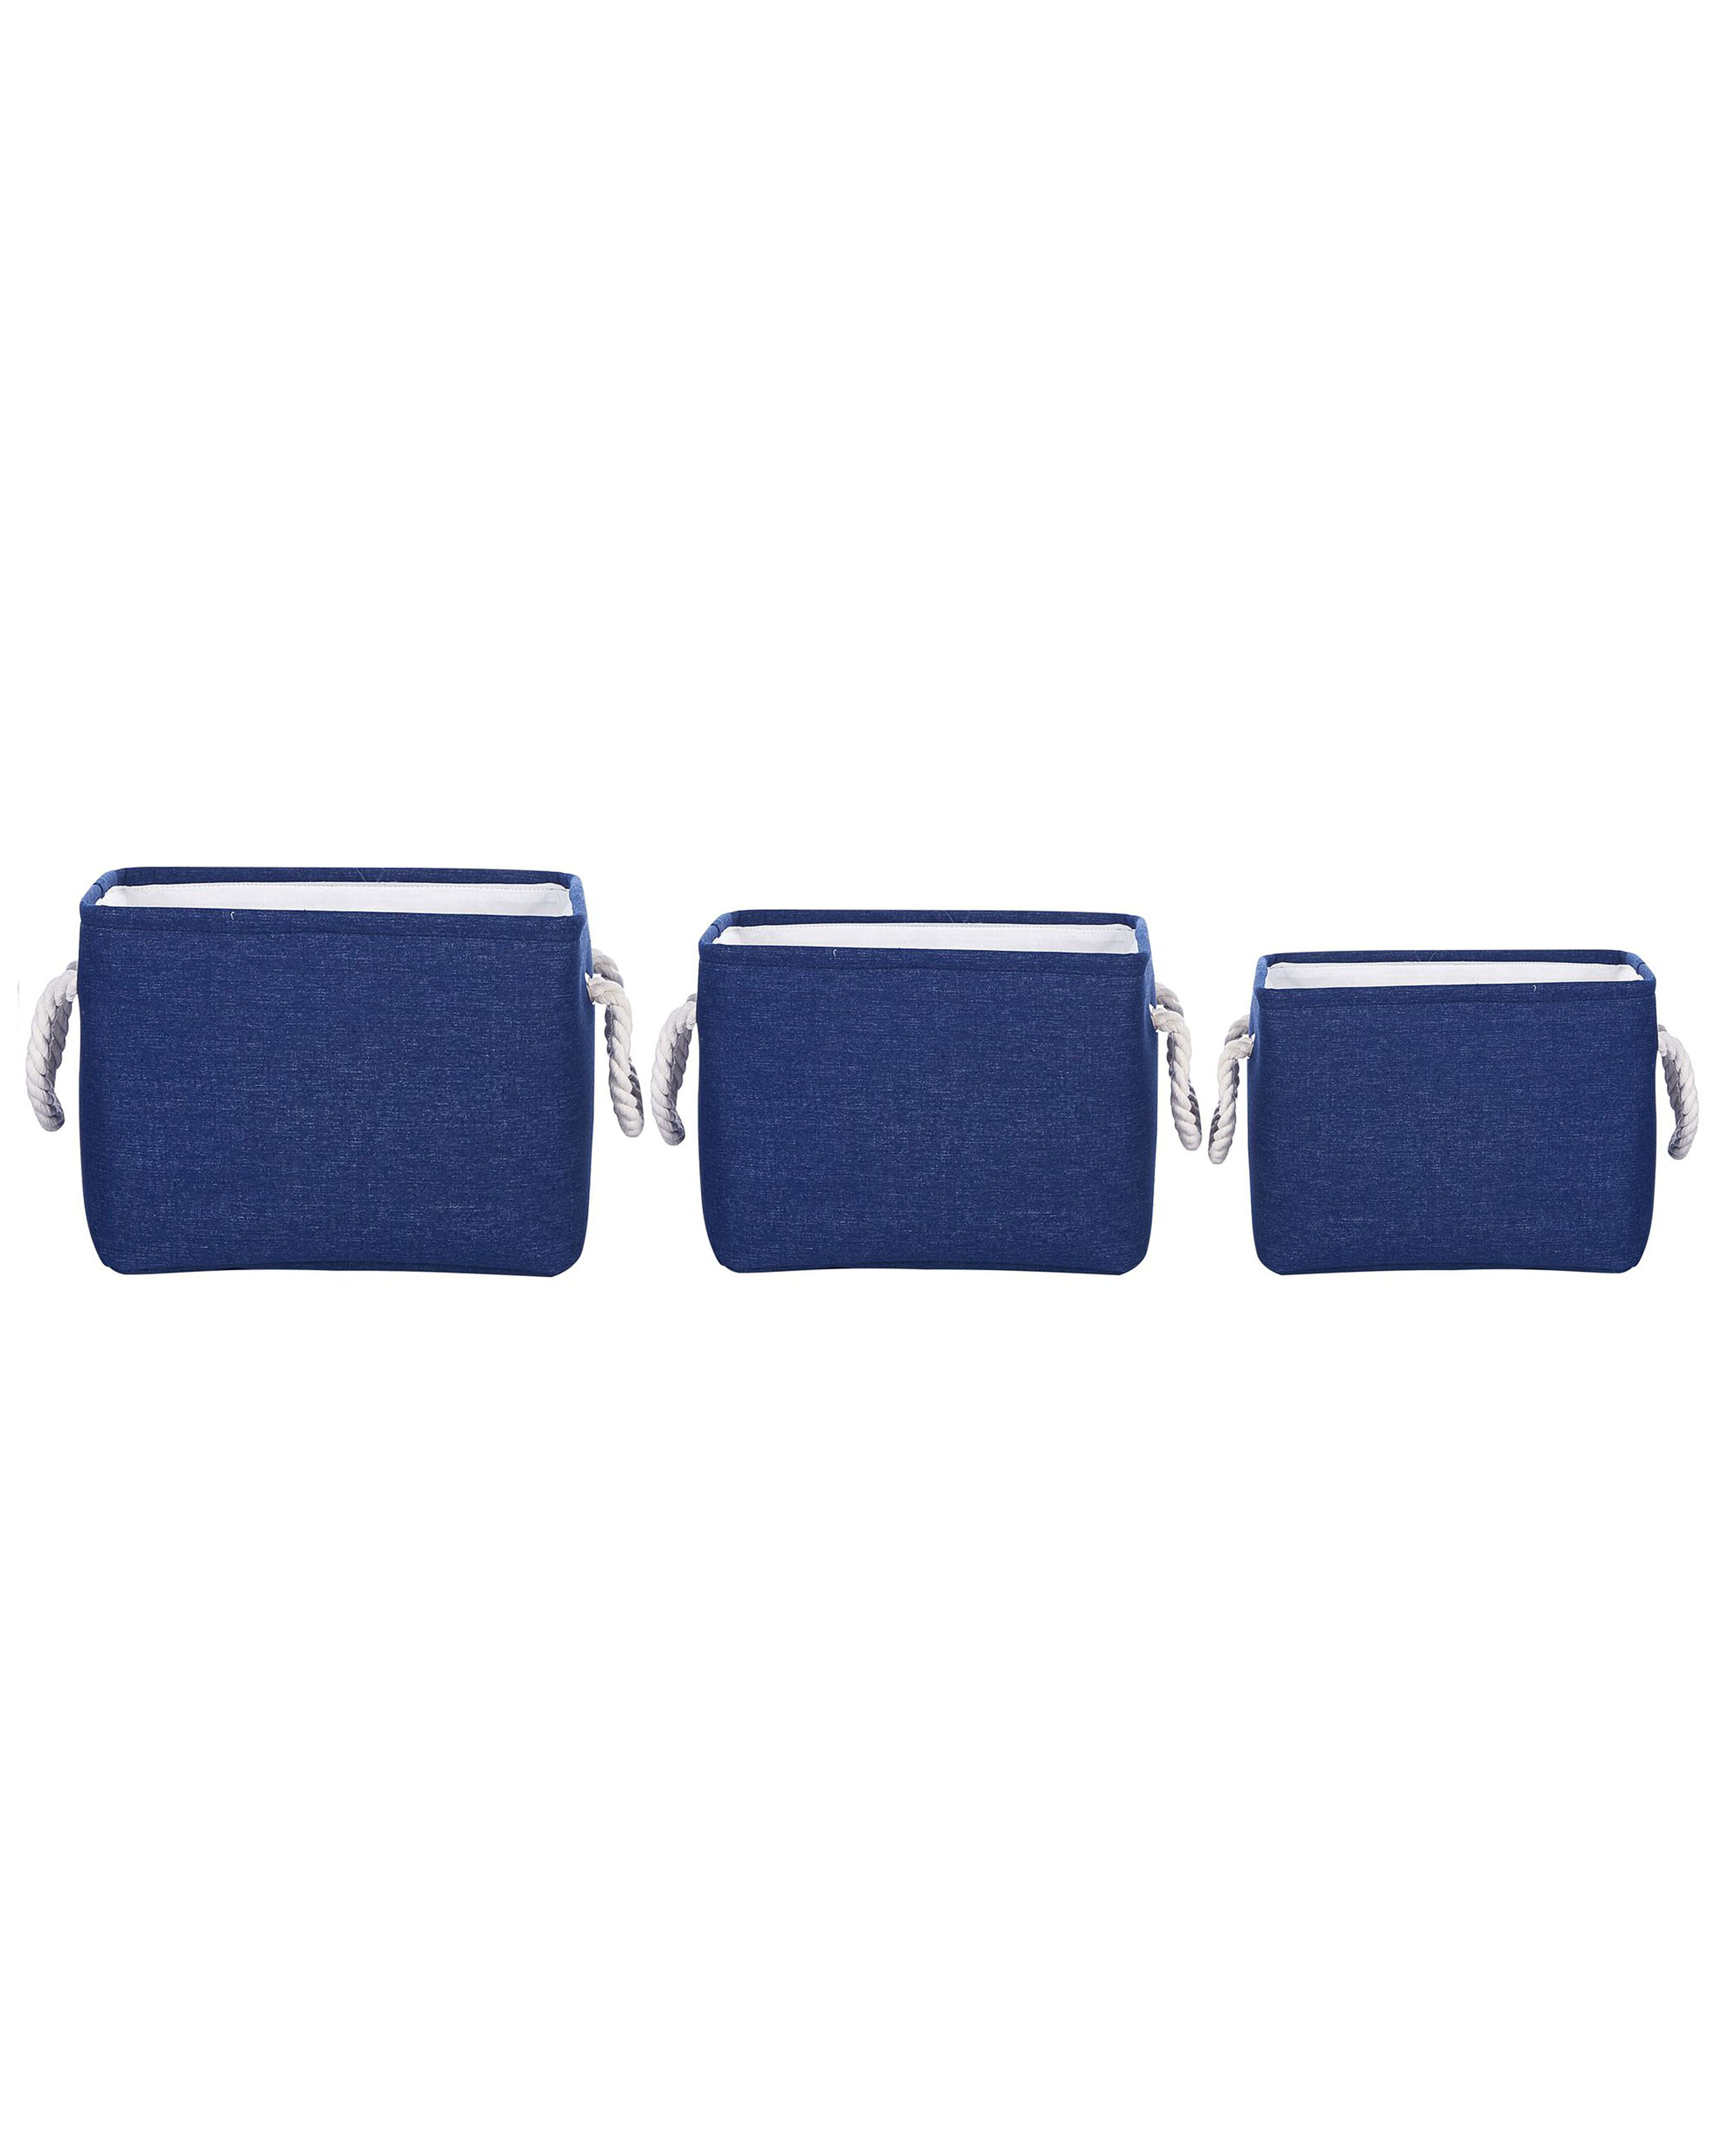 Conjunto de 3 cestas de poliéster azul marino/blanco DARQAB